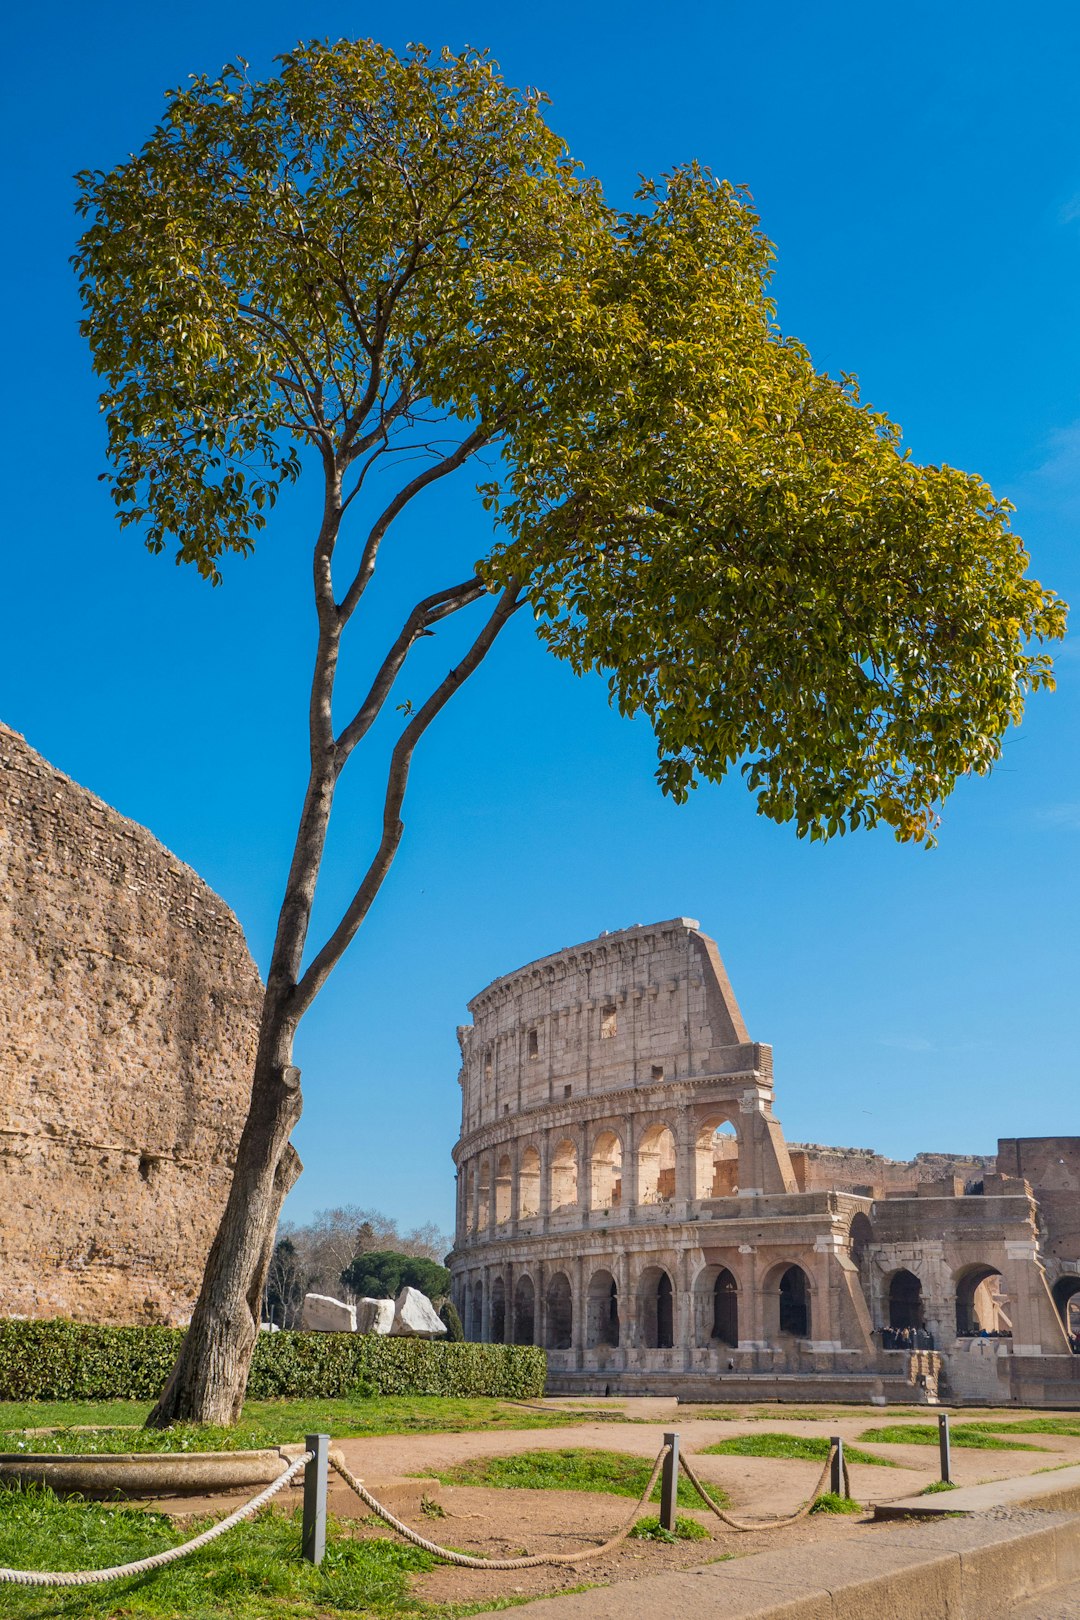 Landmark photo spot Colosseum Piazza Venezia